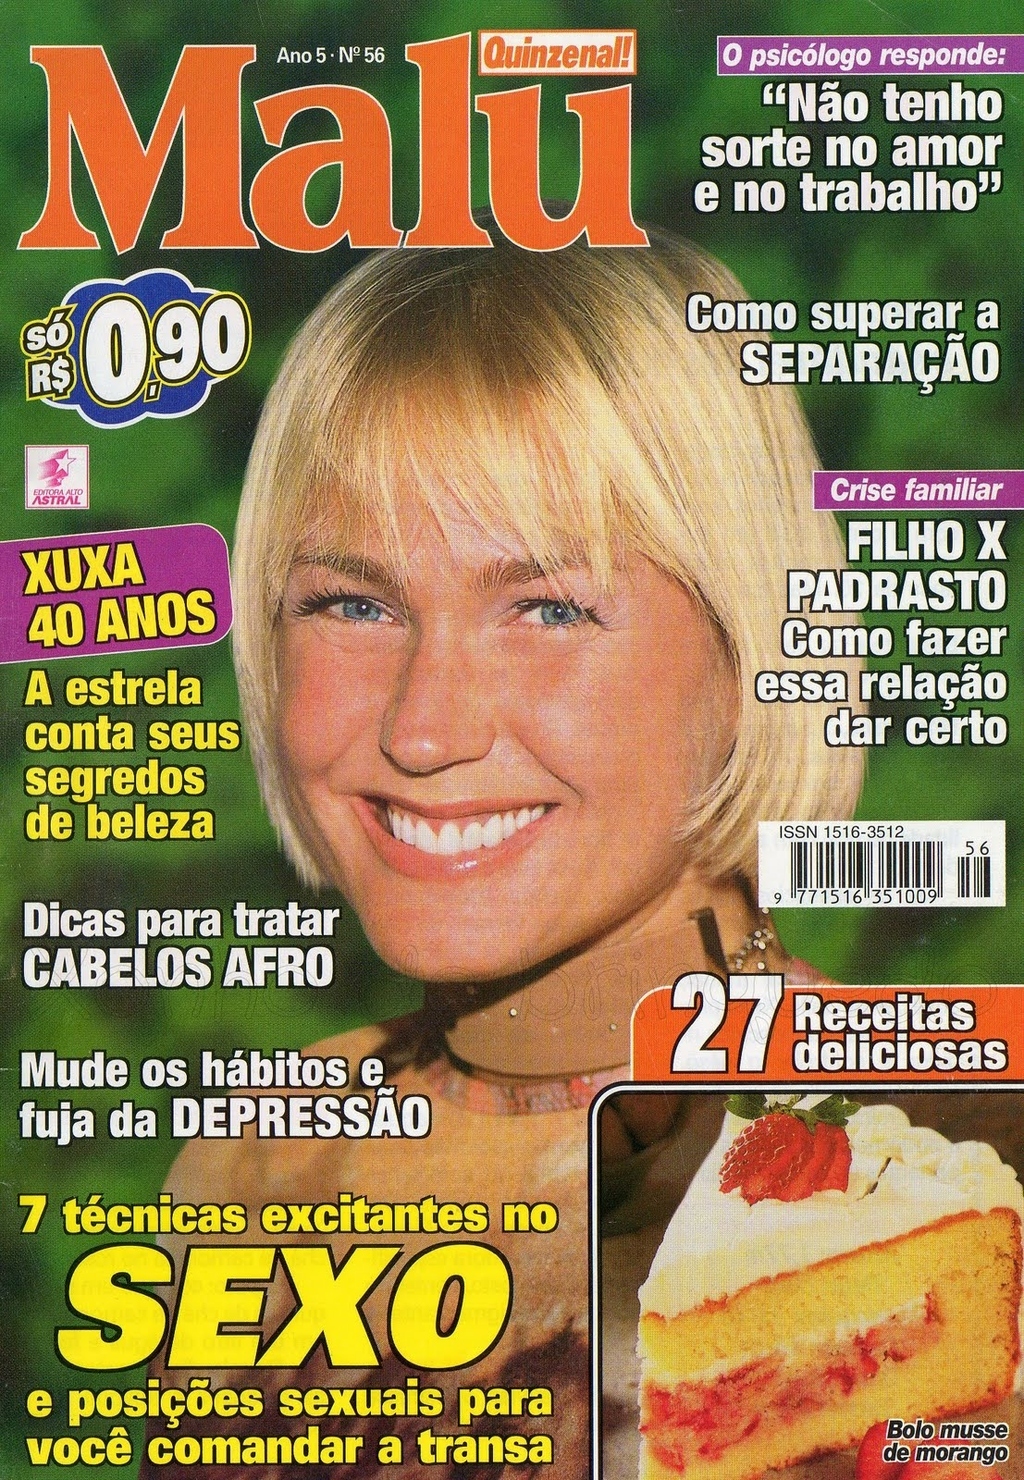 A História Da Vida De Xuxa Em 39 Capas De Revista E Uma De Disco